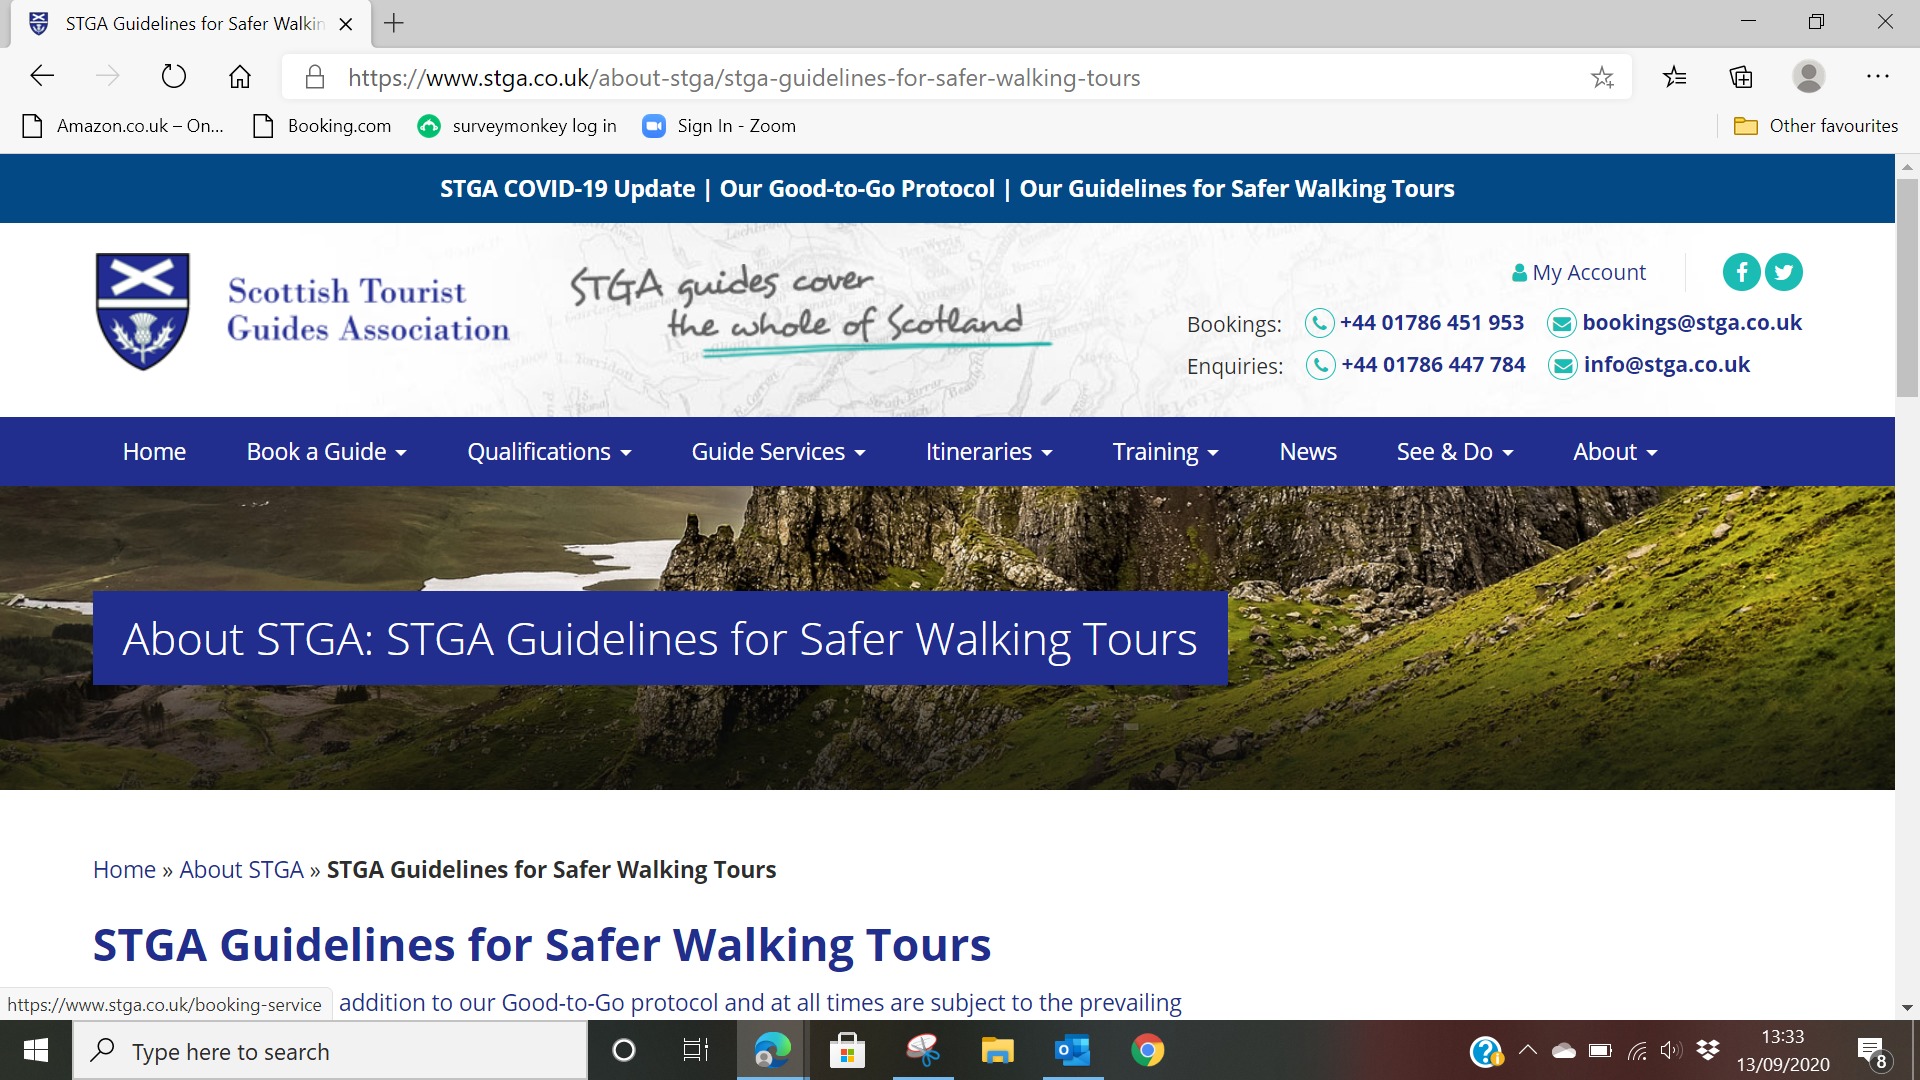 STGA Guidelines for safer walking tours